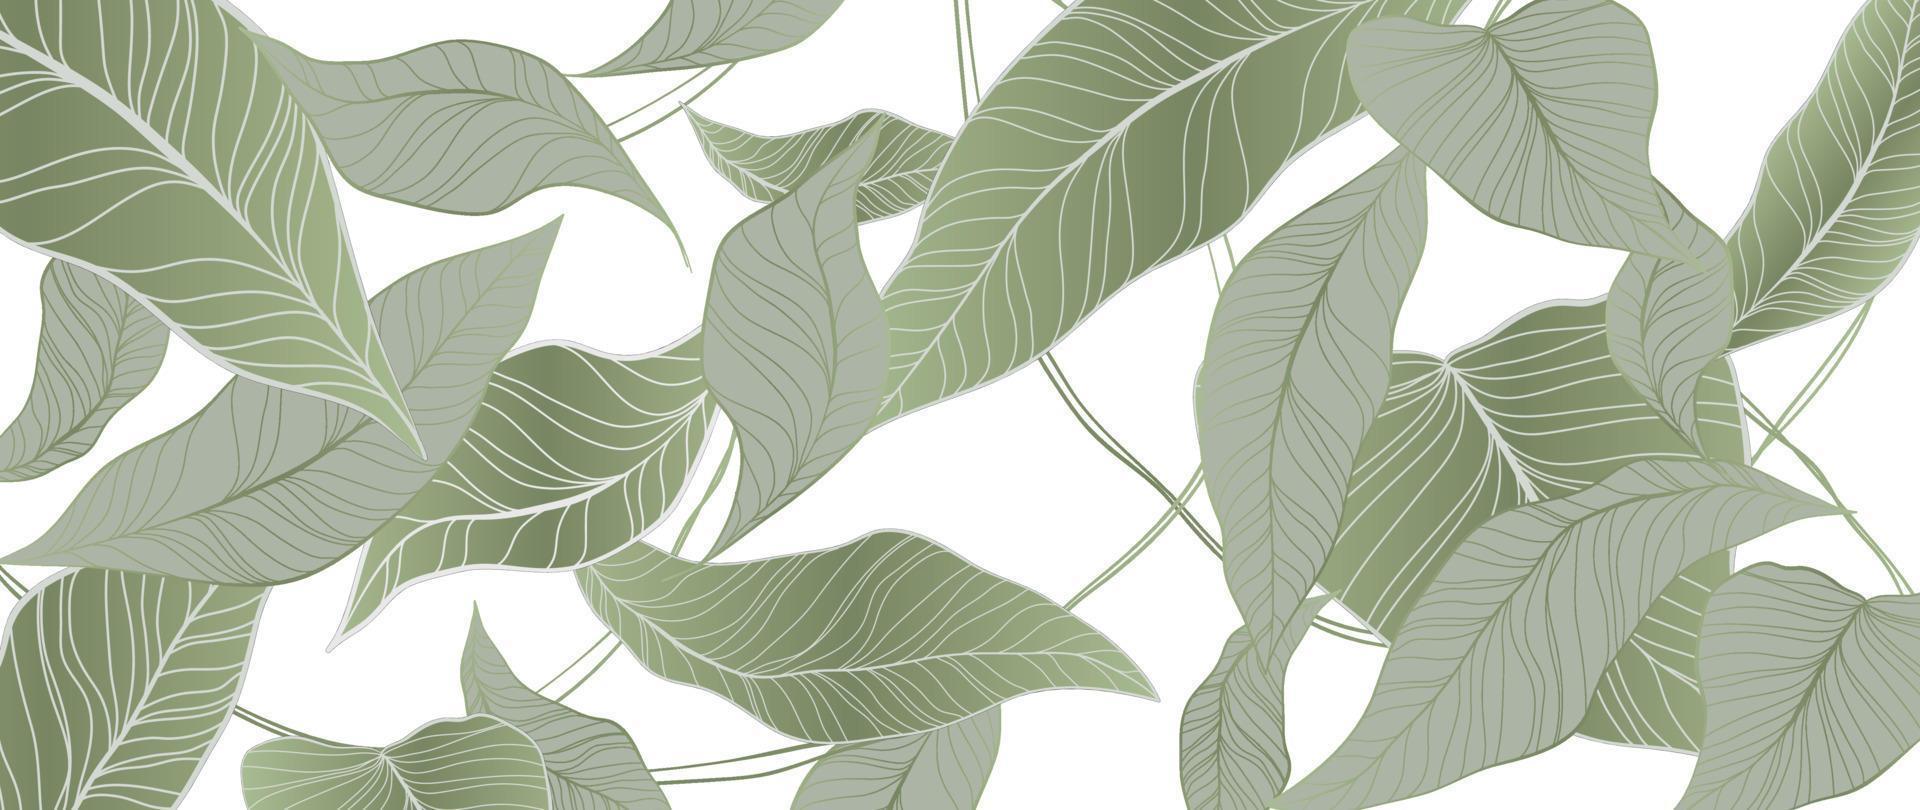 feuillage botanique ligne art fond illustration vectorielle. feuilles de palmier tropical dessinant un fond de modèle de style de contour. conception pour le papier peint, la décoration intérieure, l'emballage, l'impression, l'affiche, la couverture, la bannière. vecteur